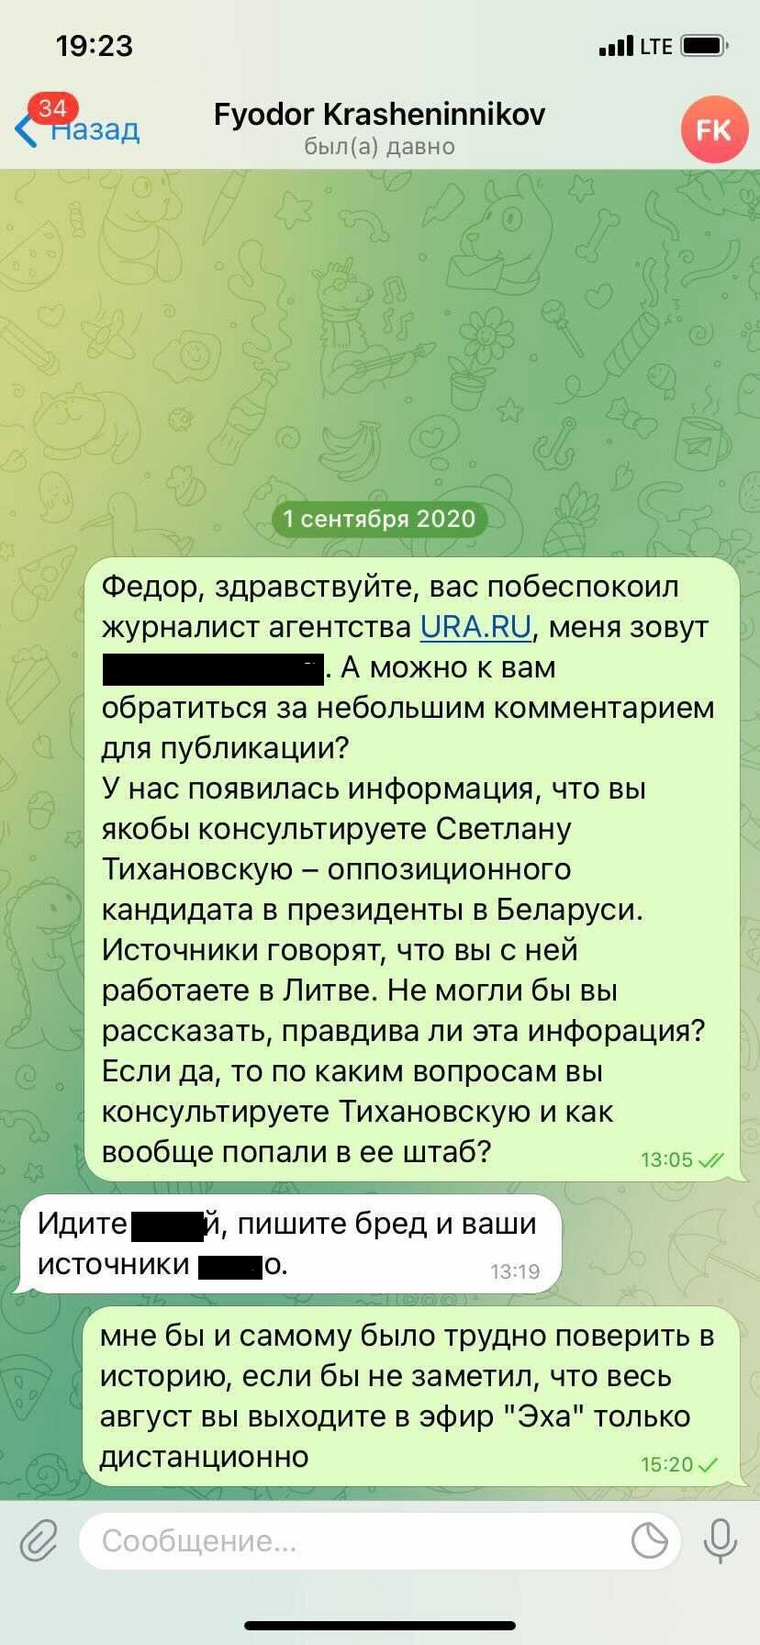 На сообщения журналиста URA.RU Крашенинников ответил матом